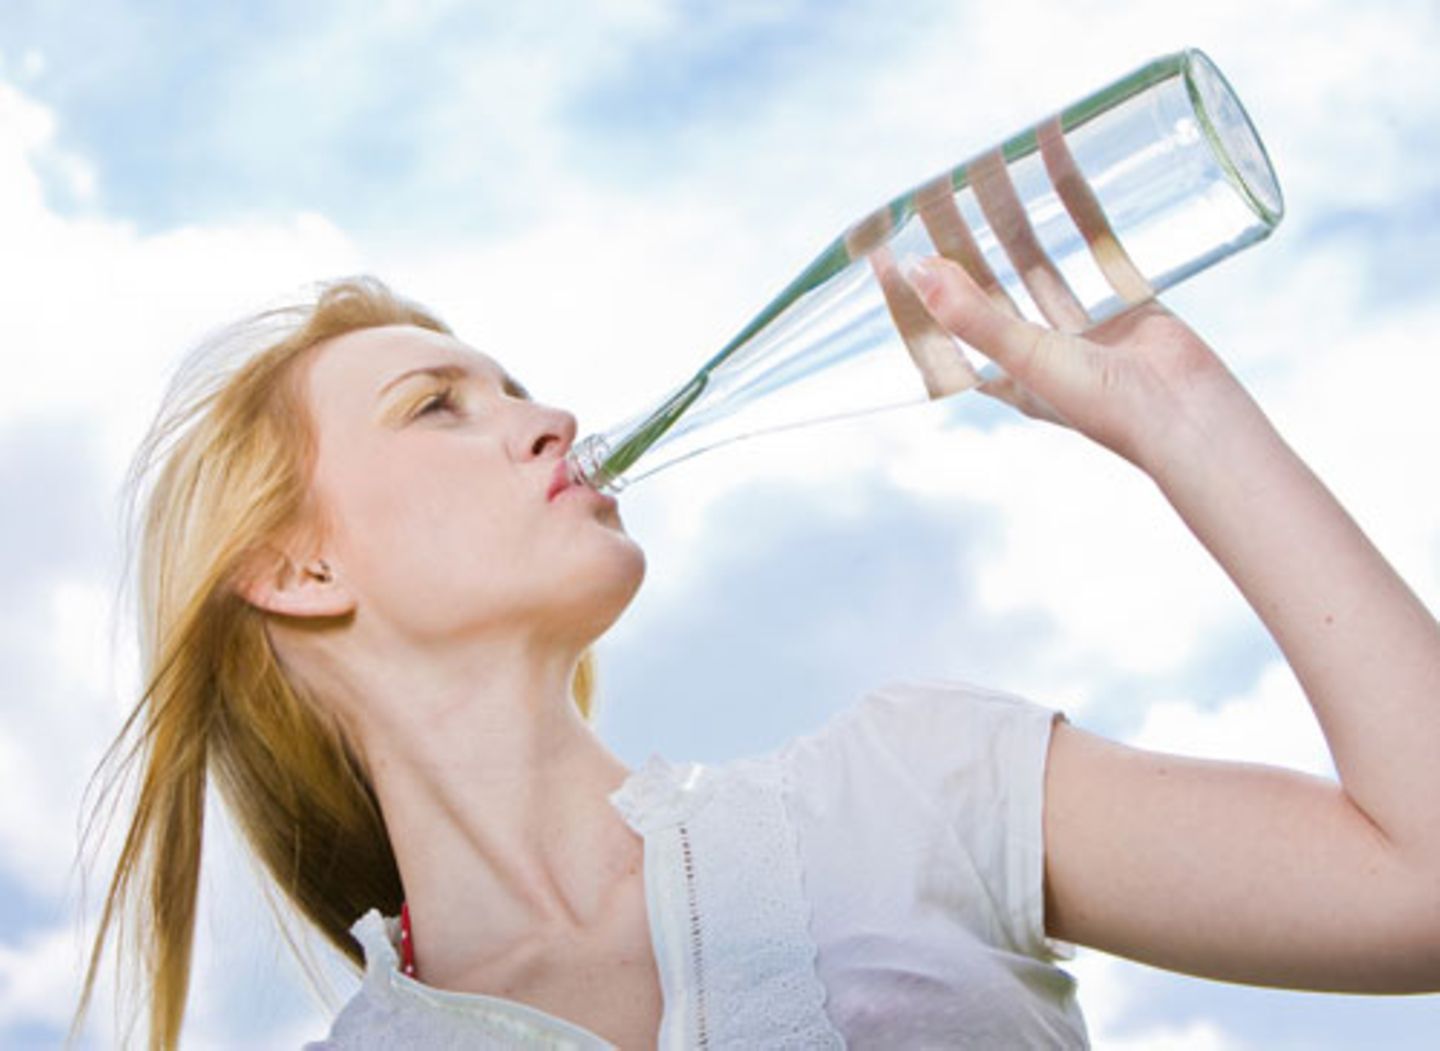 4. Viel Wasser trinken macht glatte Haut - stimmt das?